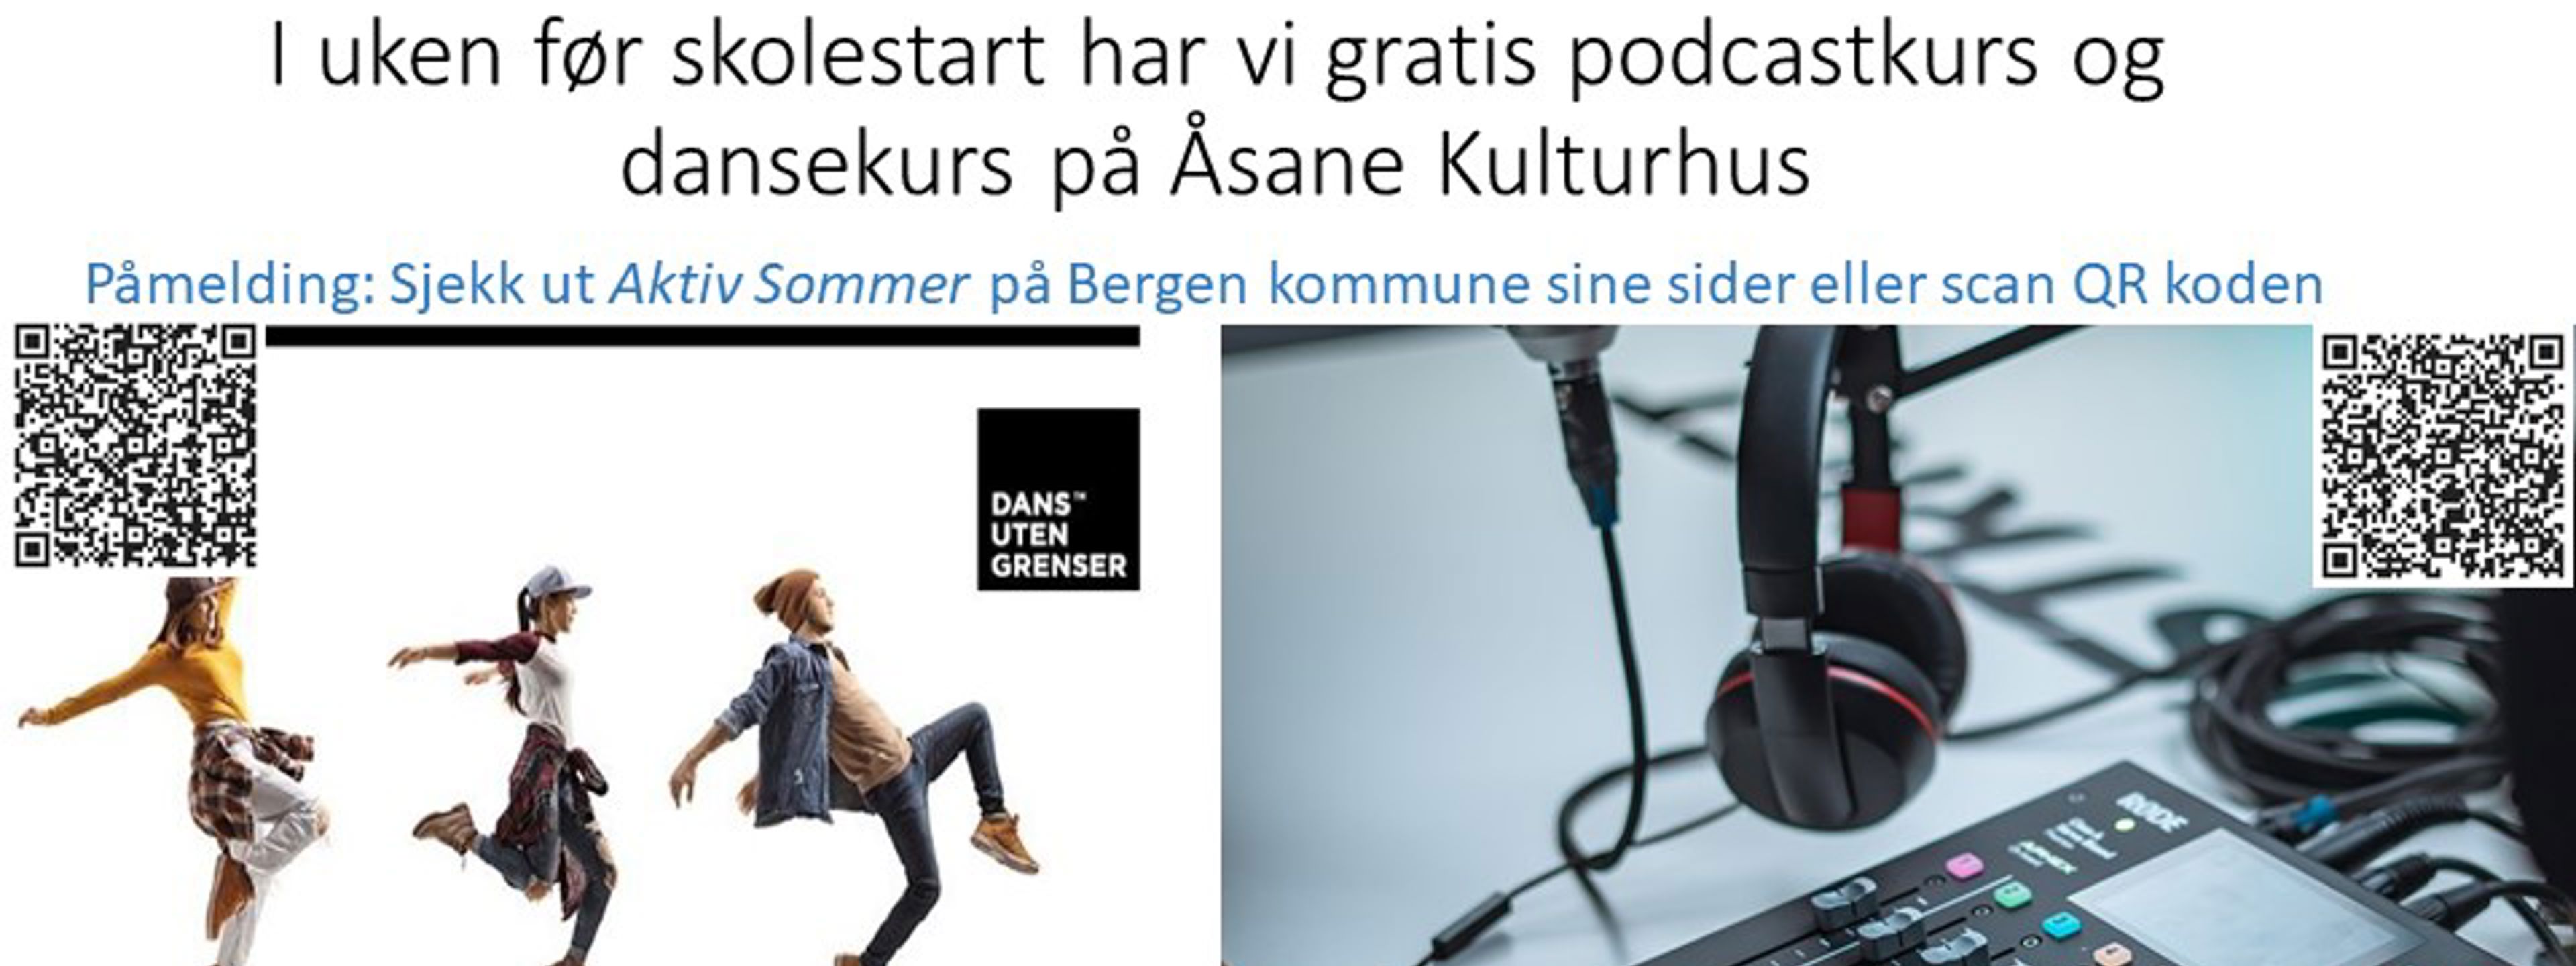 Plakat podcastkurs og dansekurs på Åsane kulturhus